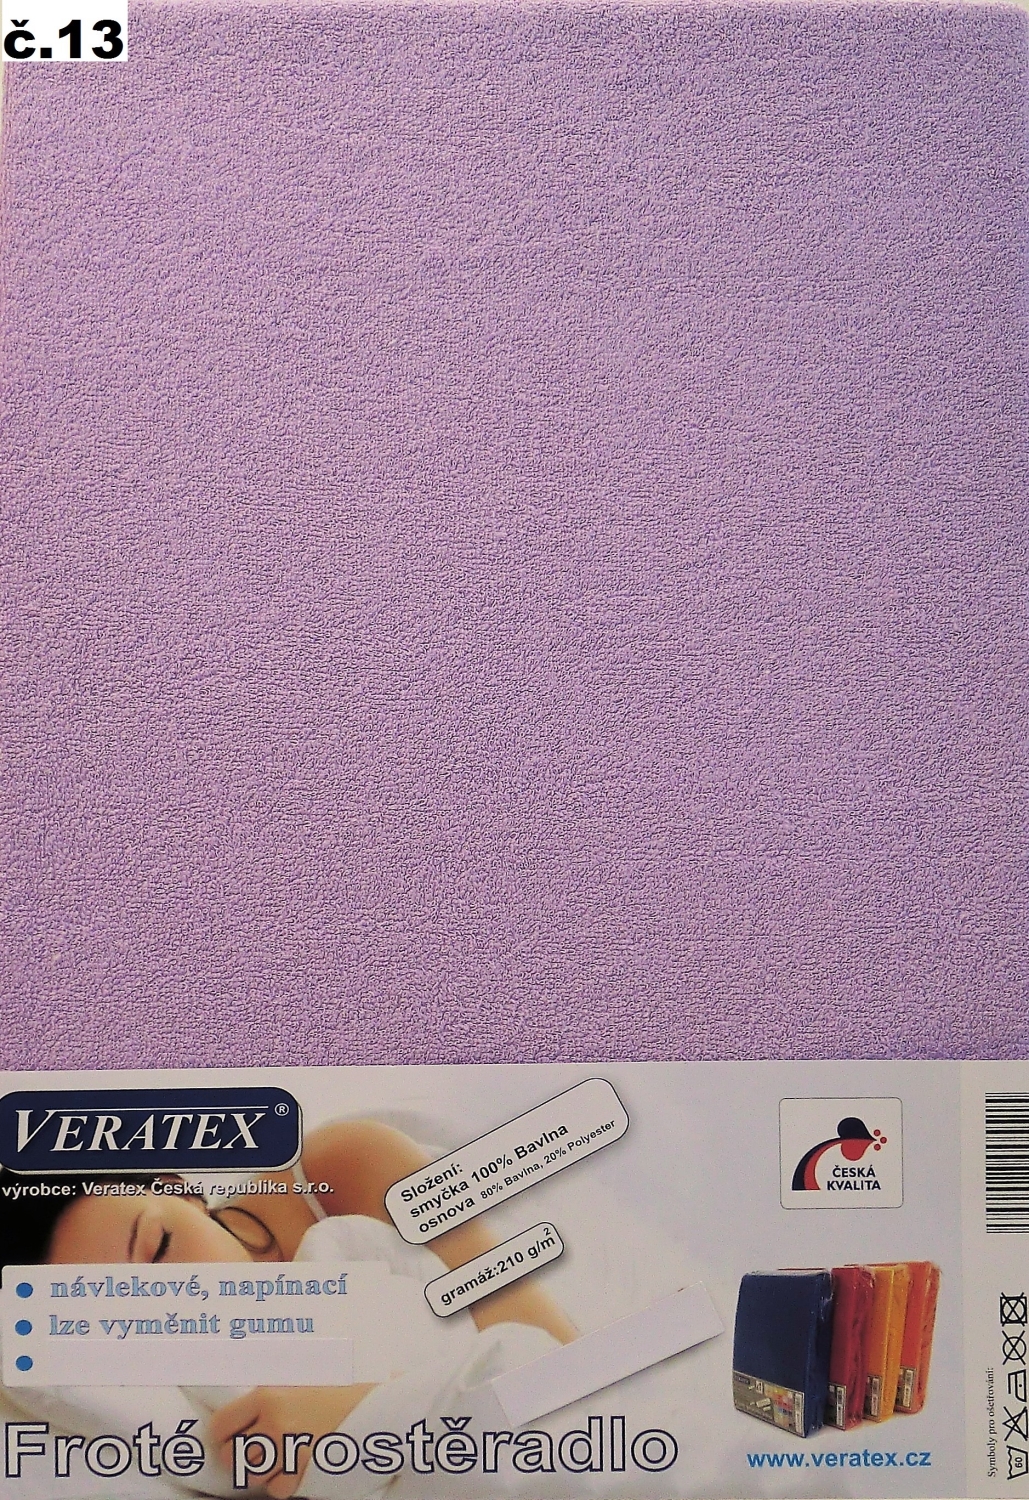 Veratex Froté prostěradlo postýlka 70x160/15 cm (č.13-fialková)